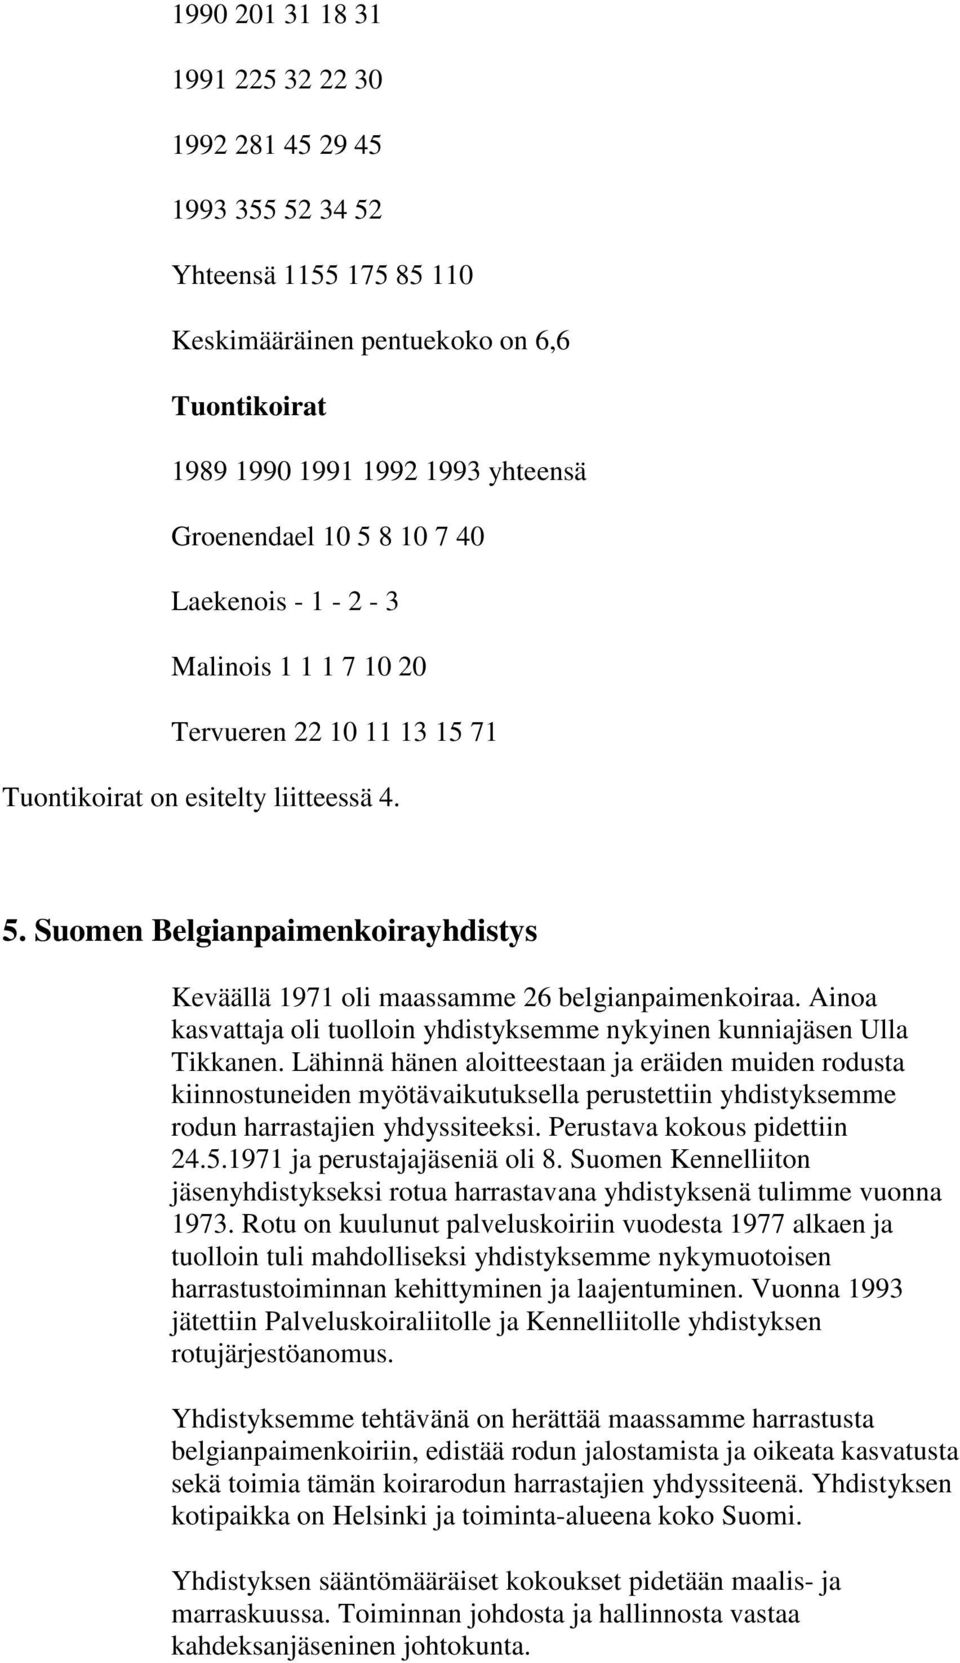 Suomen Belgianpaimenkoirayhdistys Keväällä 1971 oli maassamme 26 belgianpaimenkoiraa. Ainoa kasvattaja oli tuolloin yhdistyksemme nykyinen kunniajäsen Ulla Tikkanen.